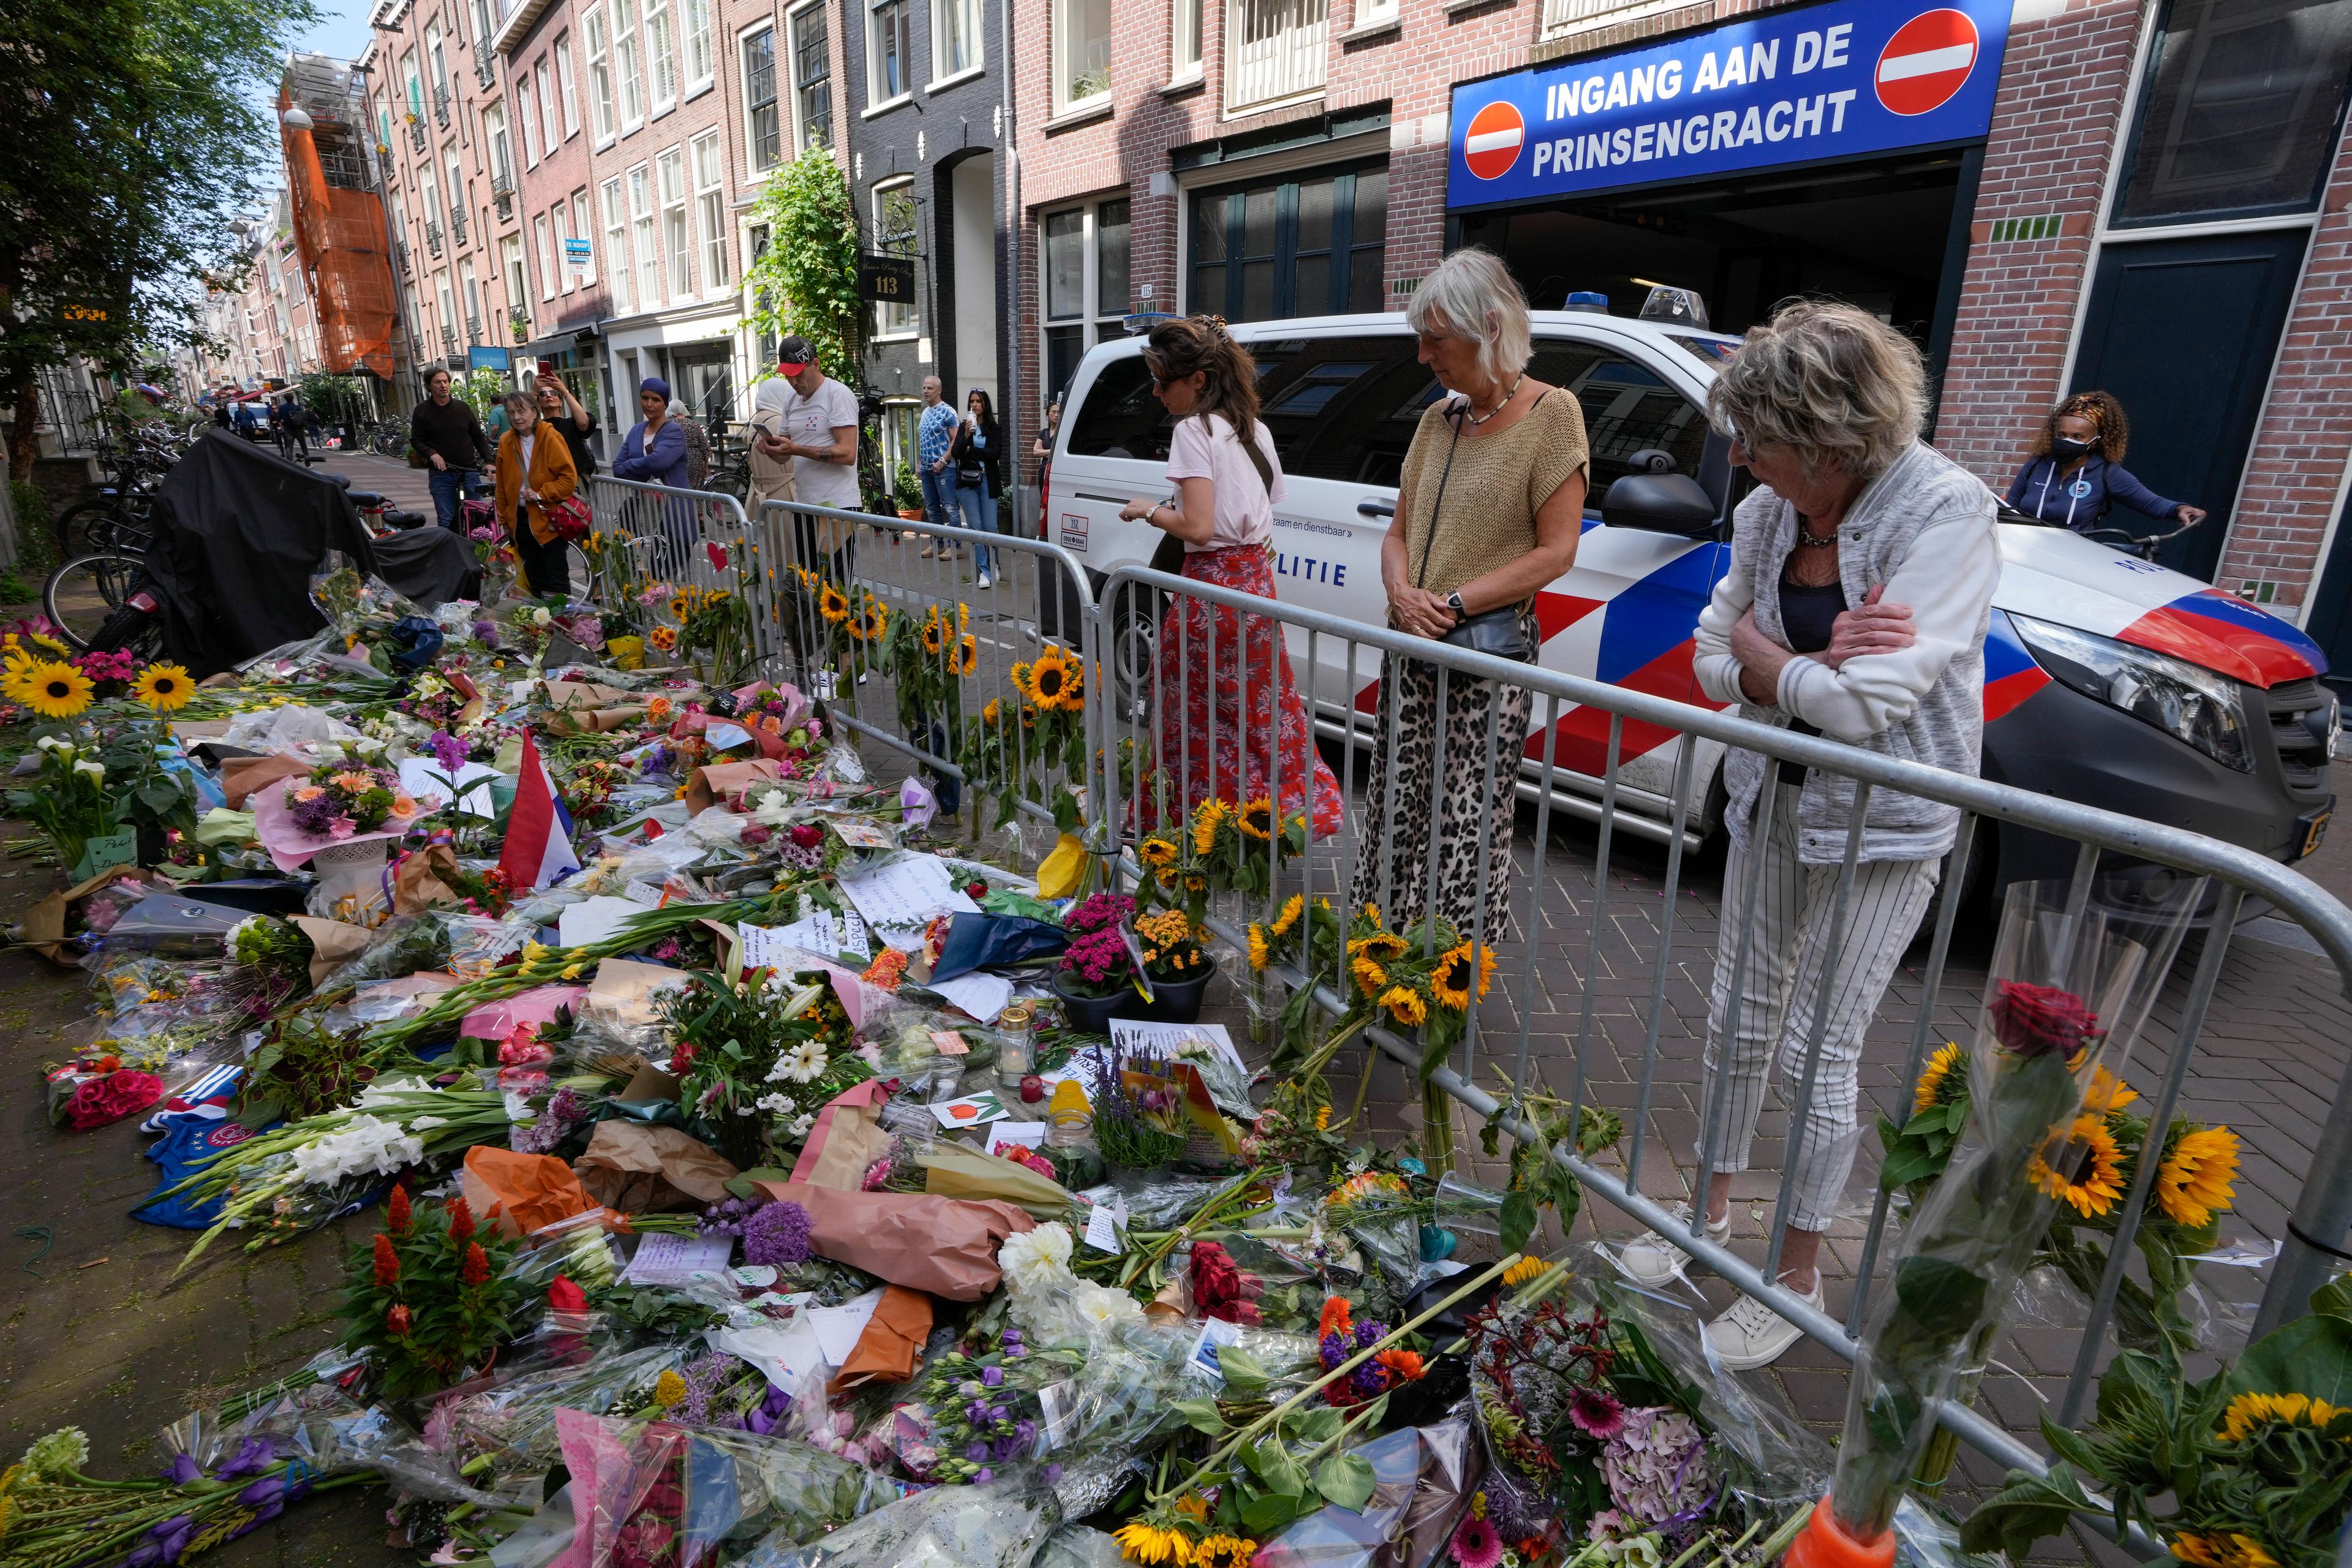 Folk lämnar blommor på platsen där nederländska journalisten Peter R de Vries blev skjuten. Arkivbild. Foto: Peter Dejong/AP/TT